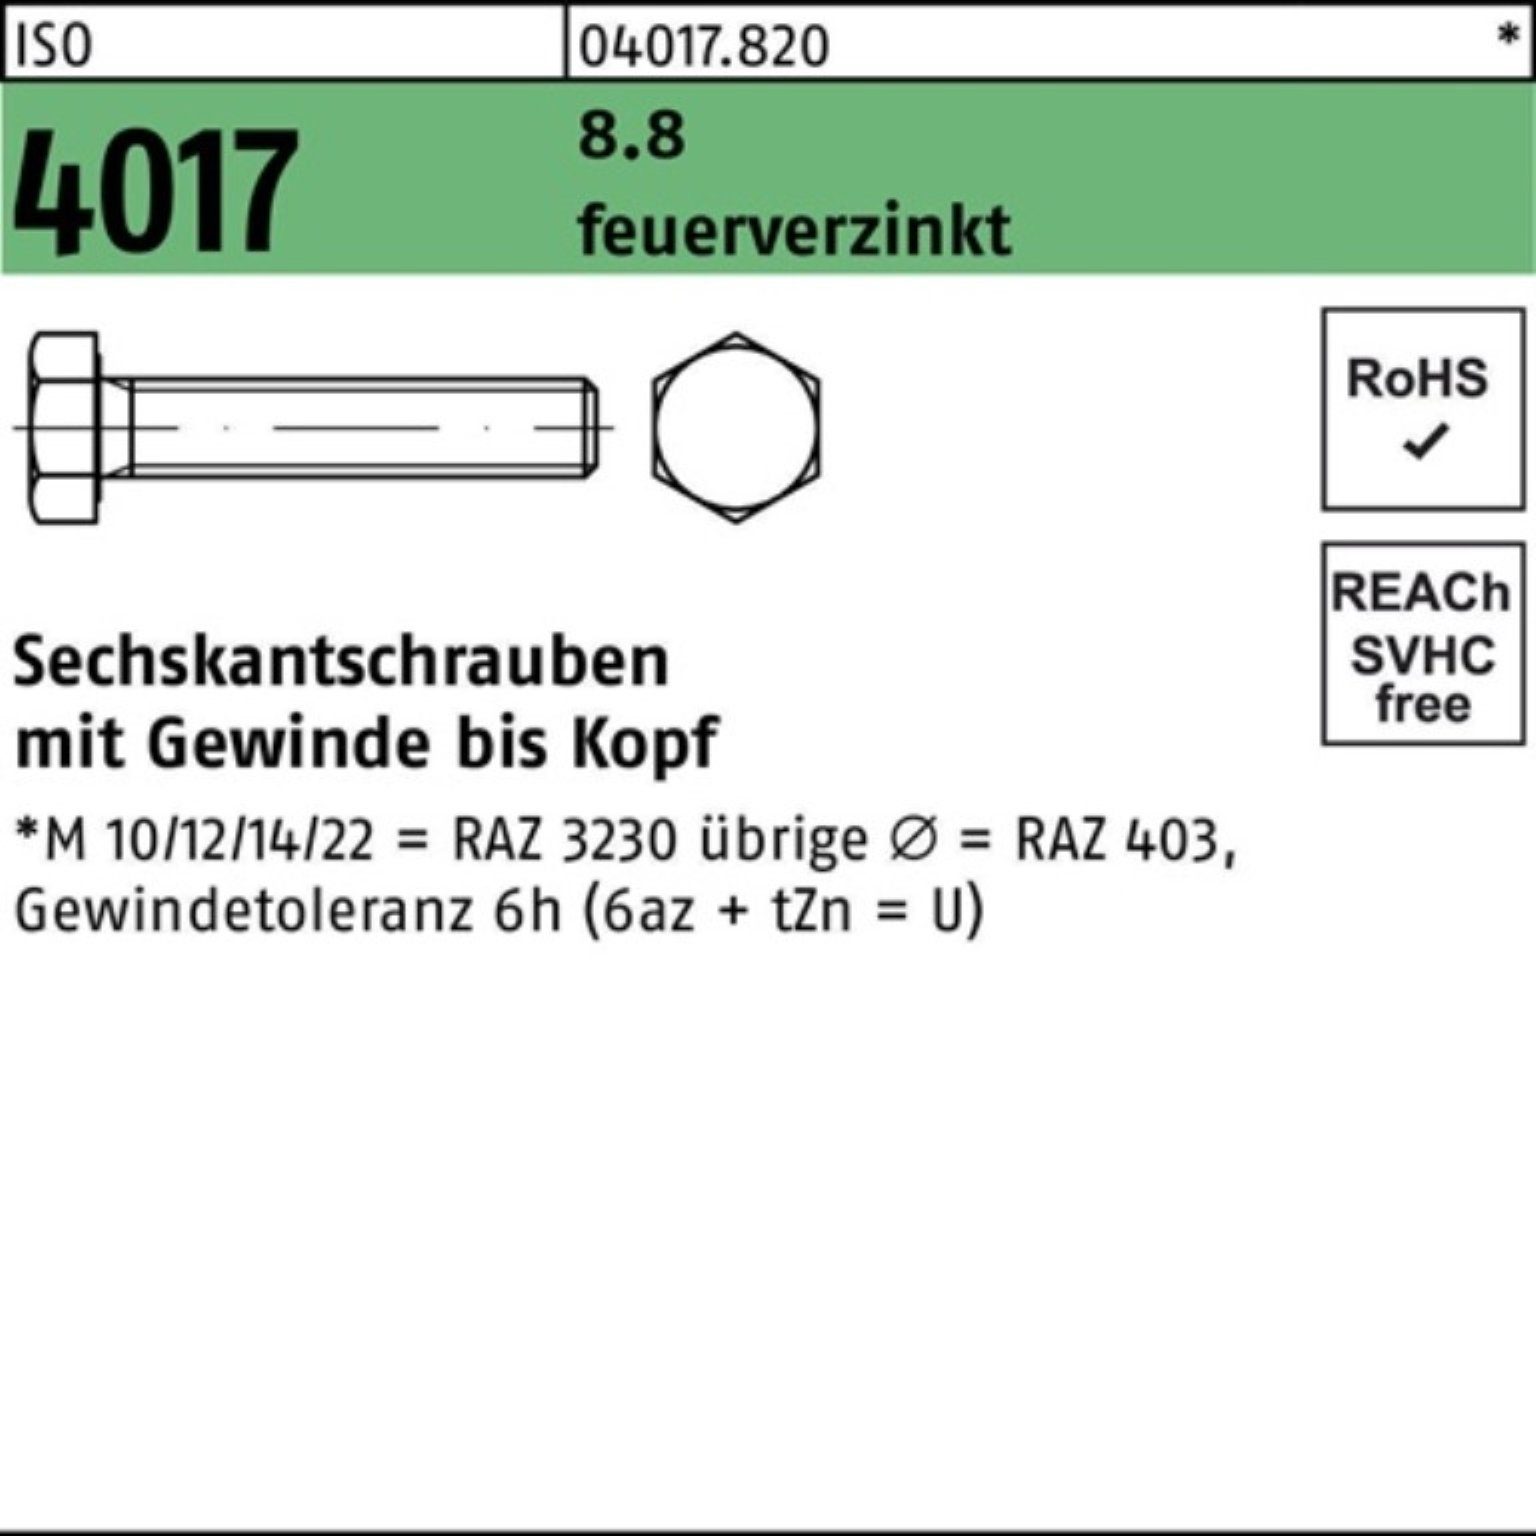 Bufab Sechskantschraube St Sechskantschraube 100 Pack 4017 ISO feuerverz. 50 100er 8.8 M12x VG